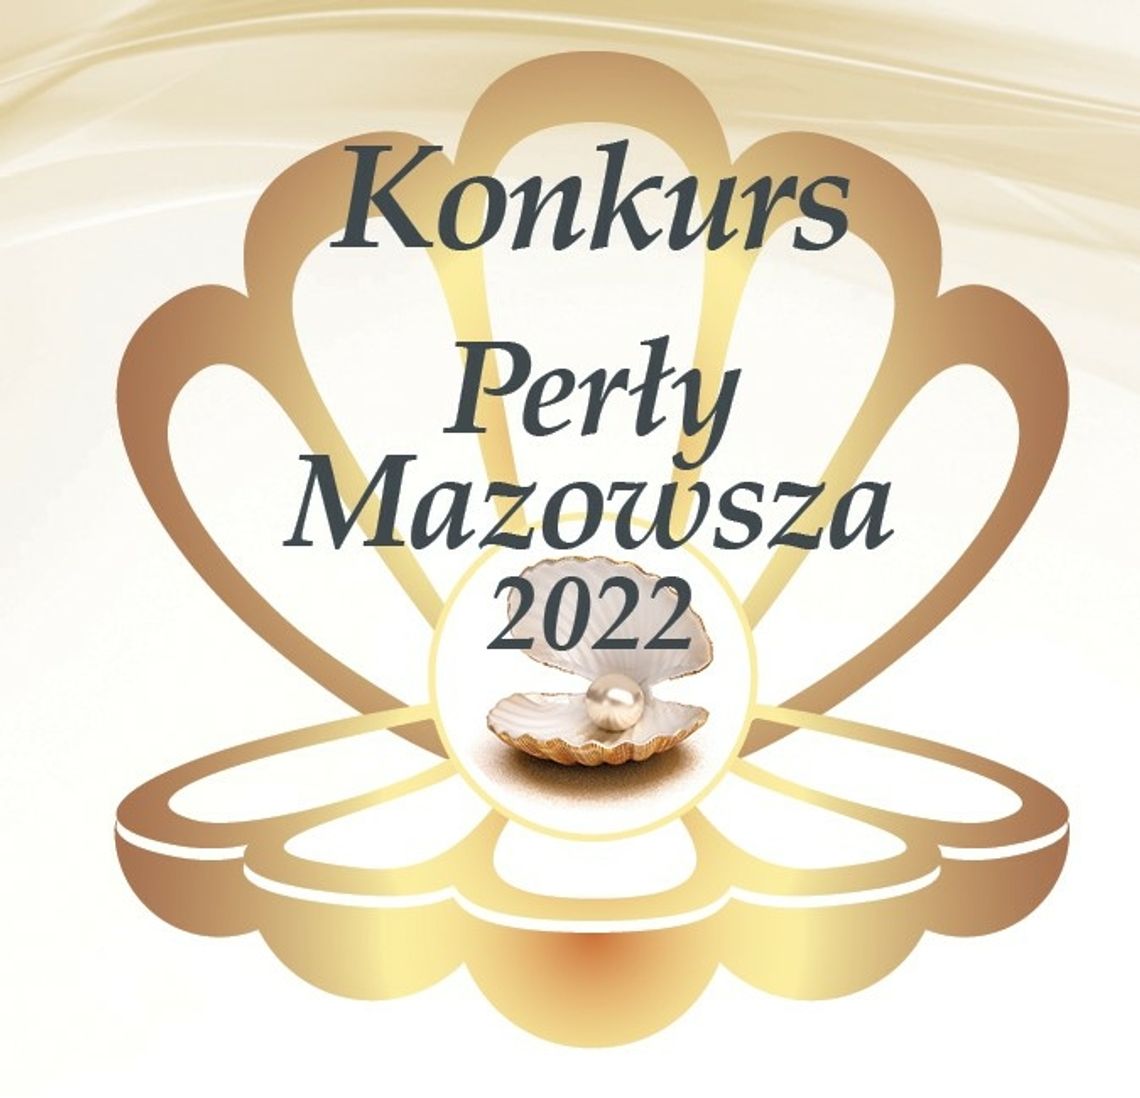 Konkurs Perły Mazowsza 2022 - ostatnie dni zgłaszania kandydatów